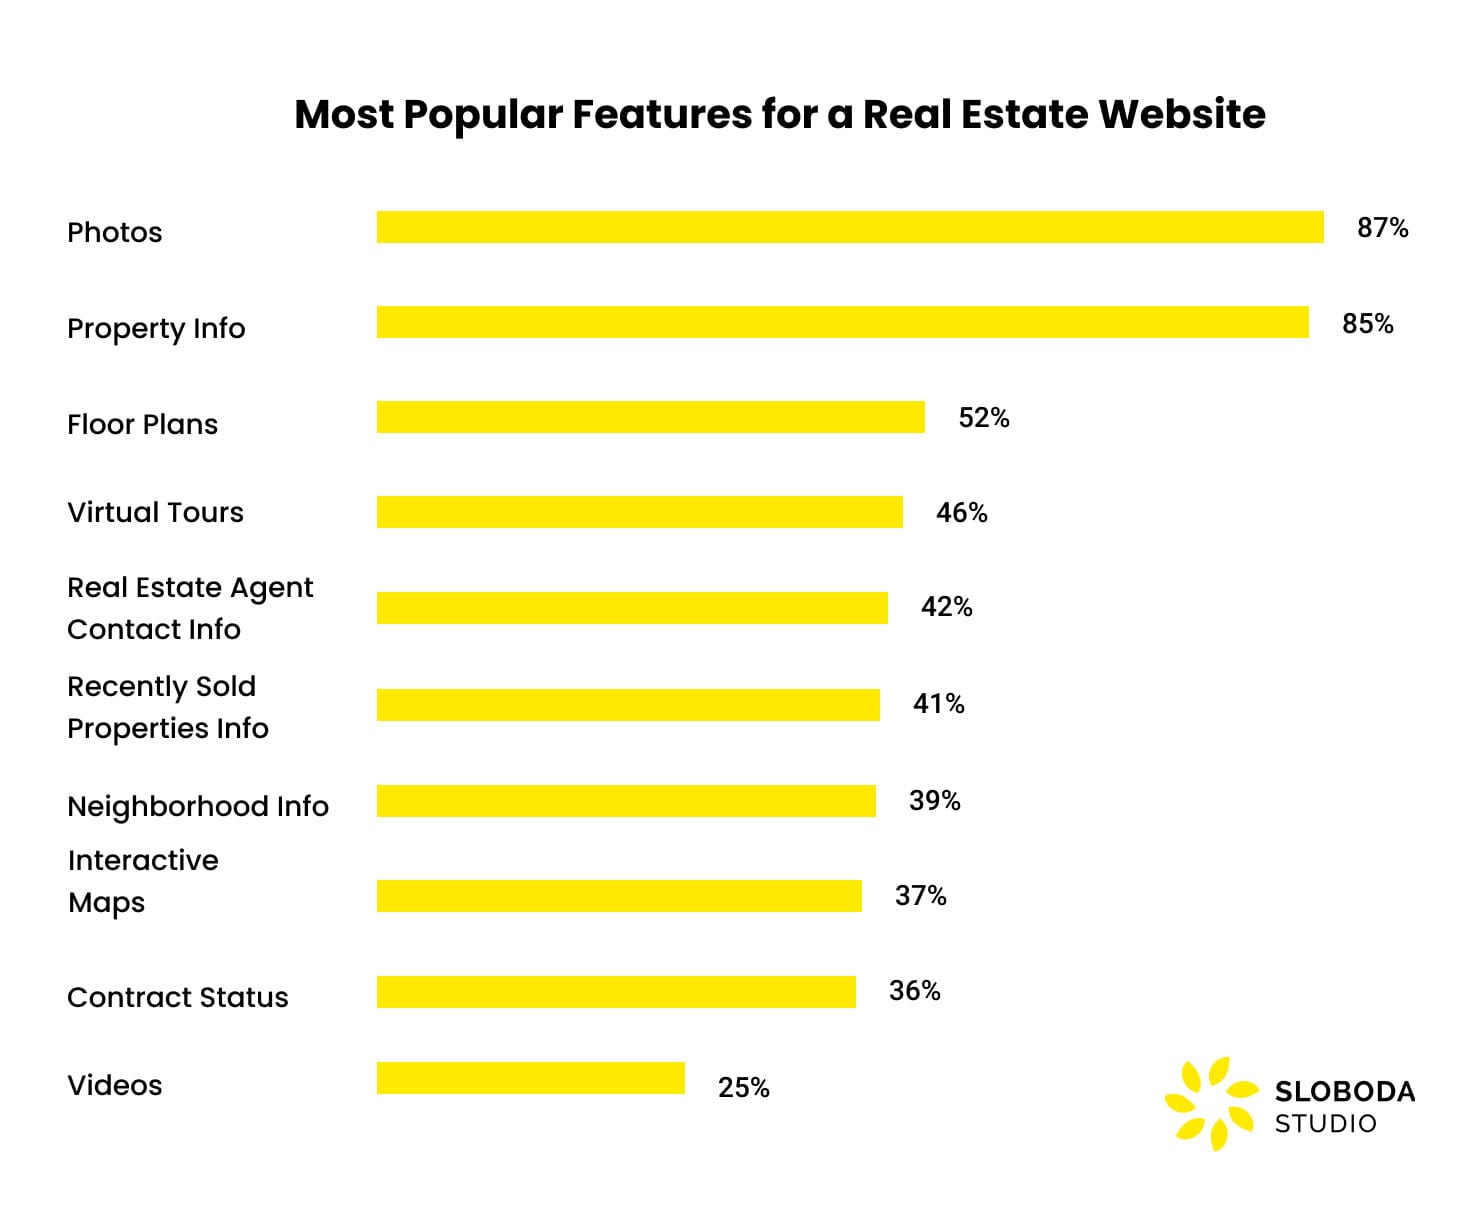 các tính năng phổ biến nhất cho một trang web bất động sản